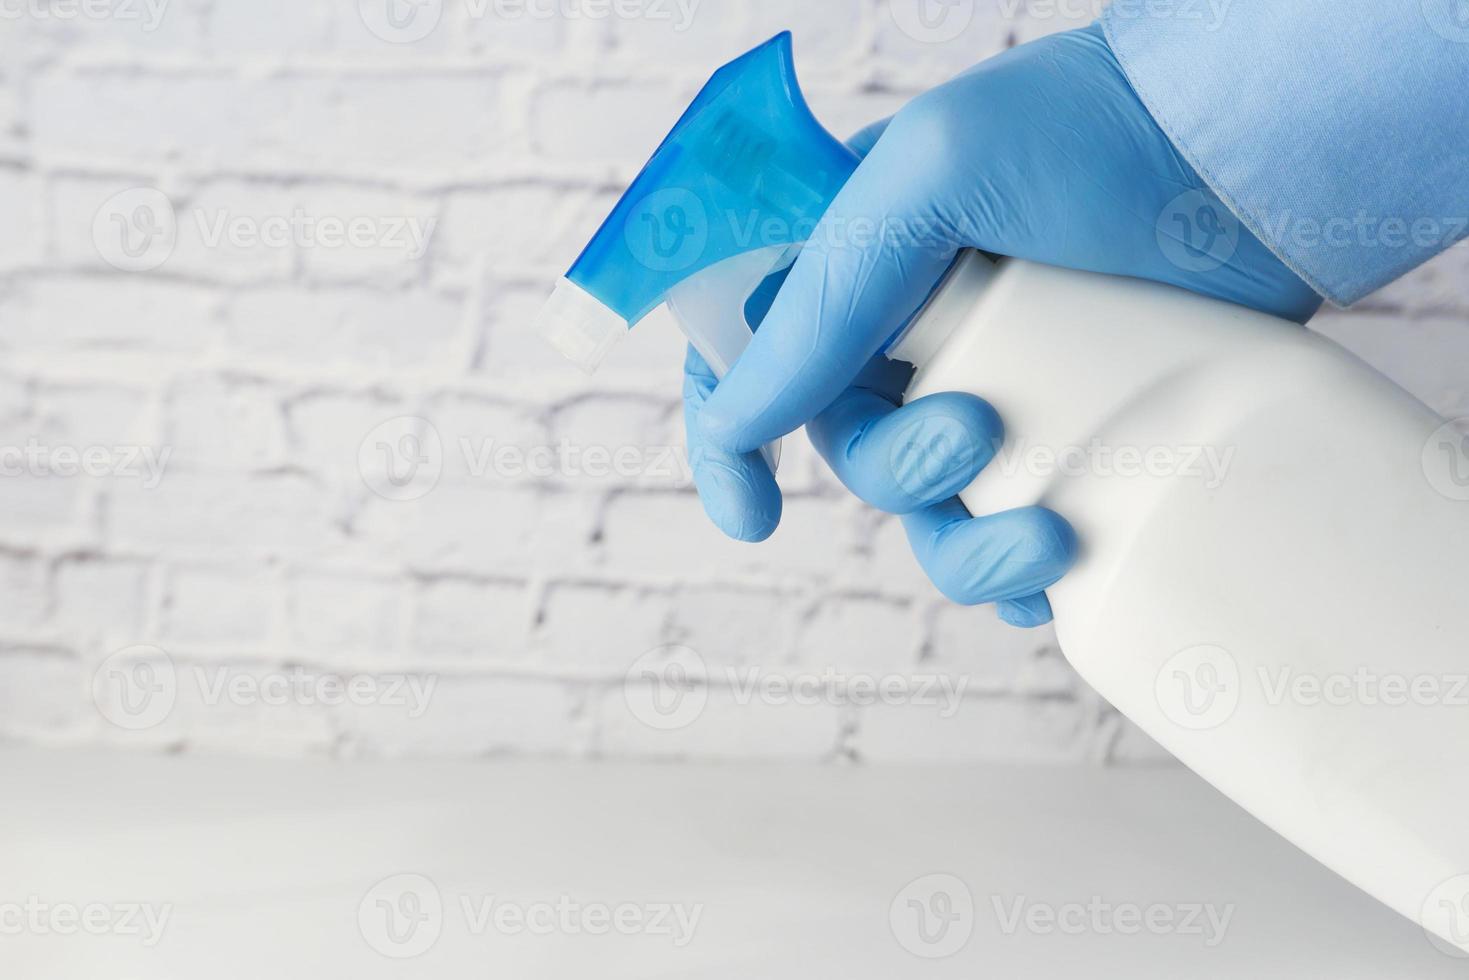 Sprühen des Desinfektionsmittels mit Handschuhen foto